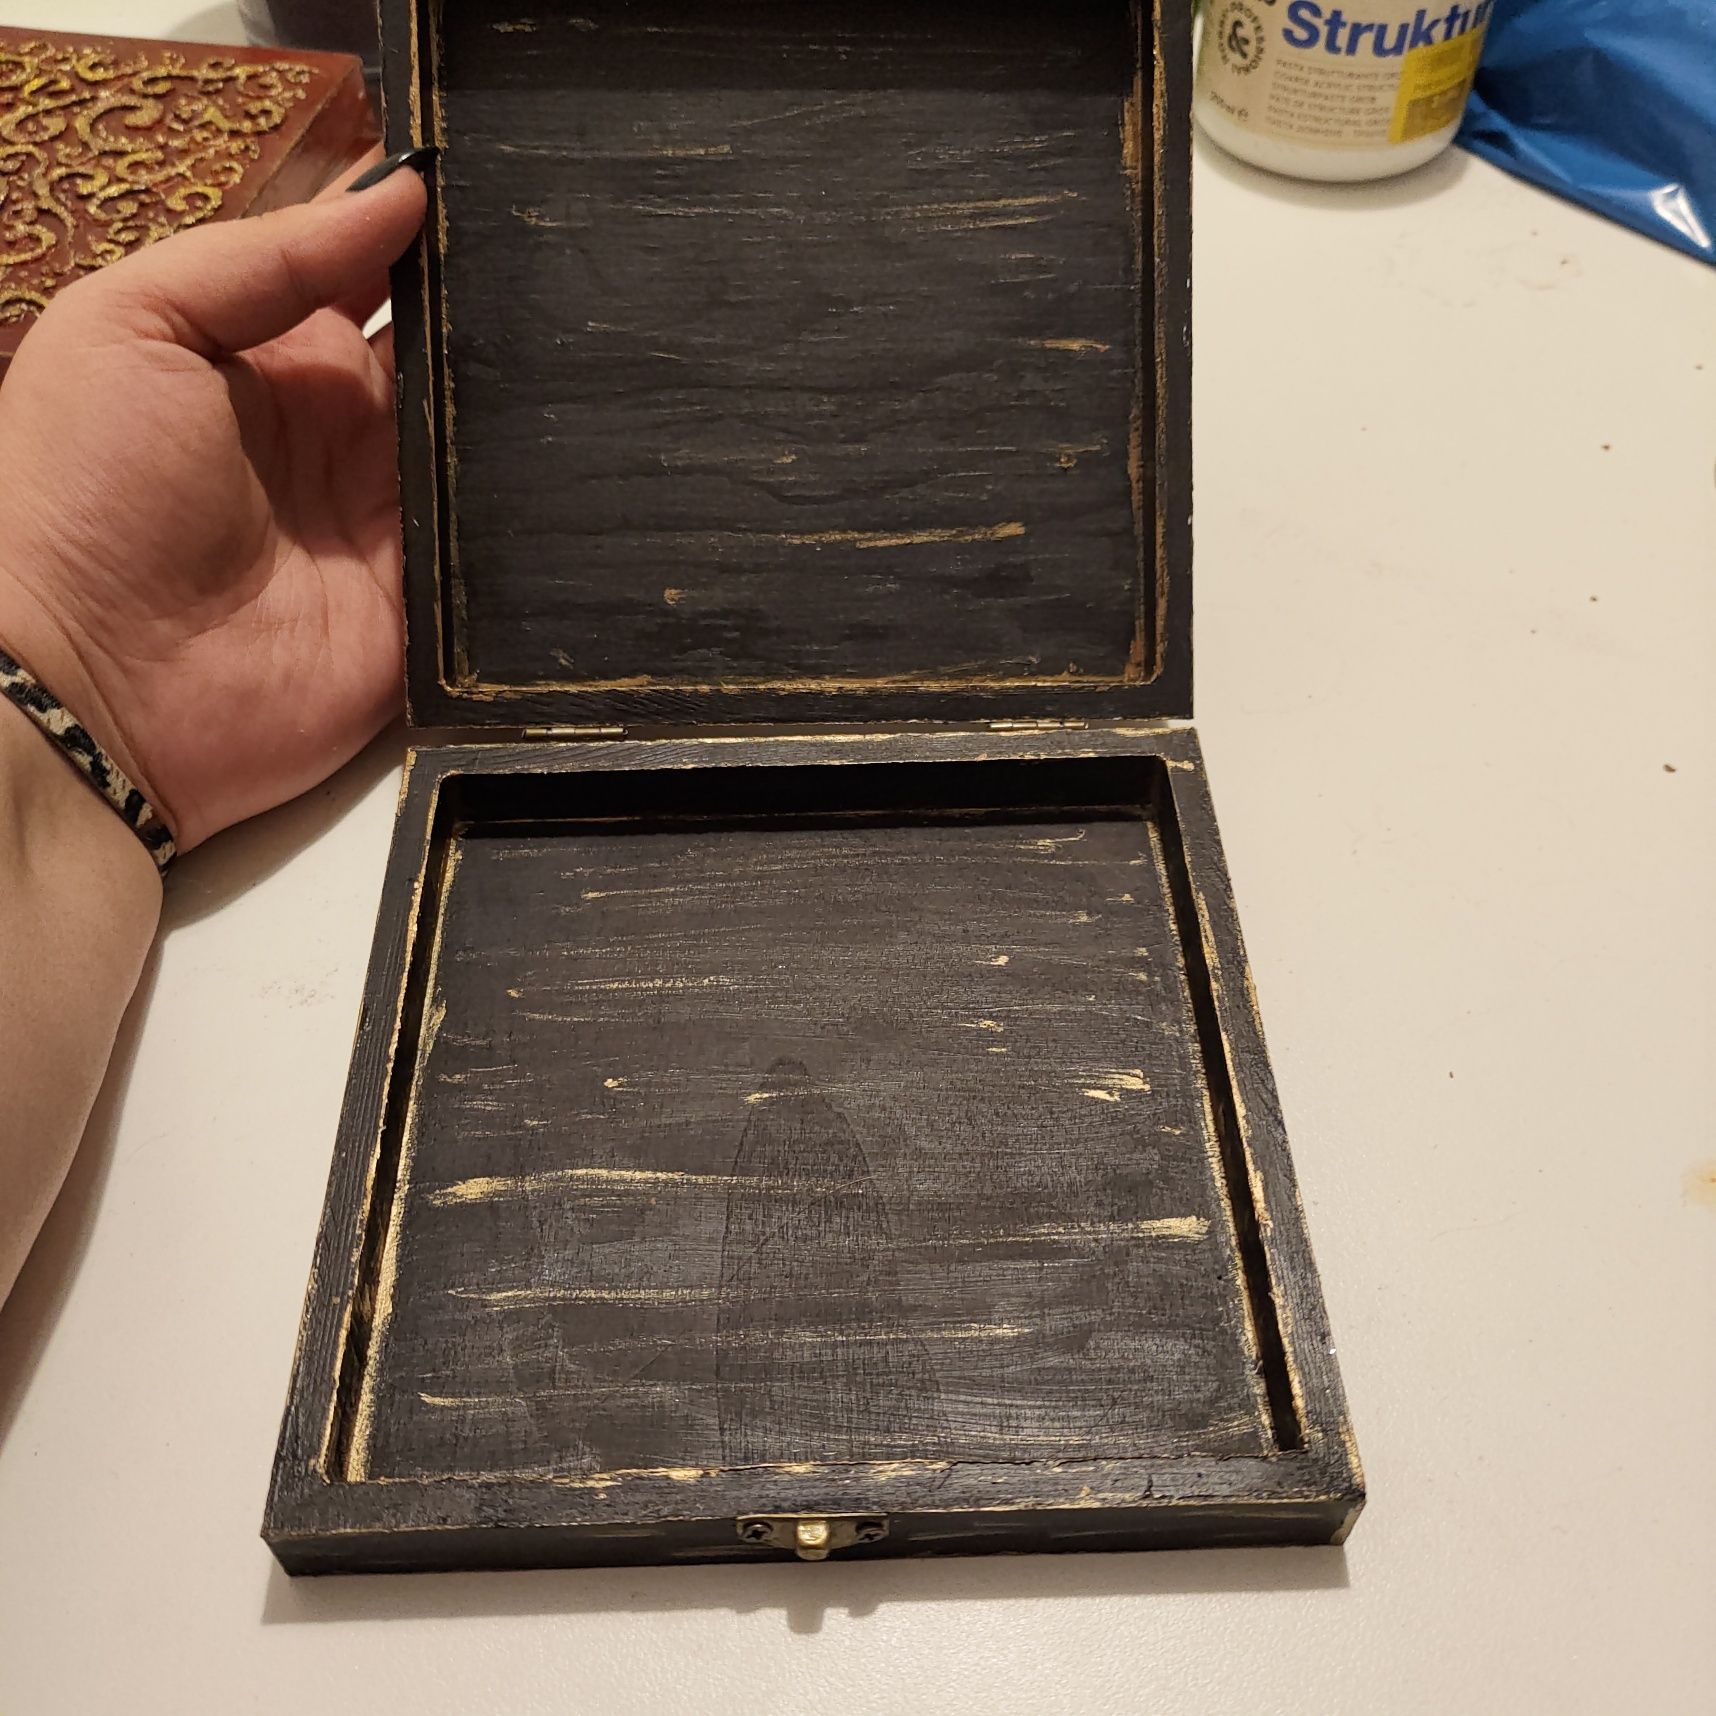 Tabachera - cutie pentru trabucuri (handmade)